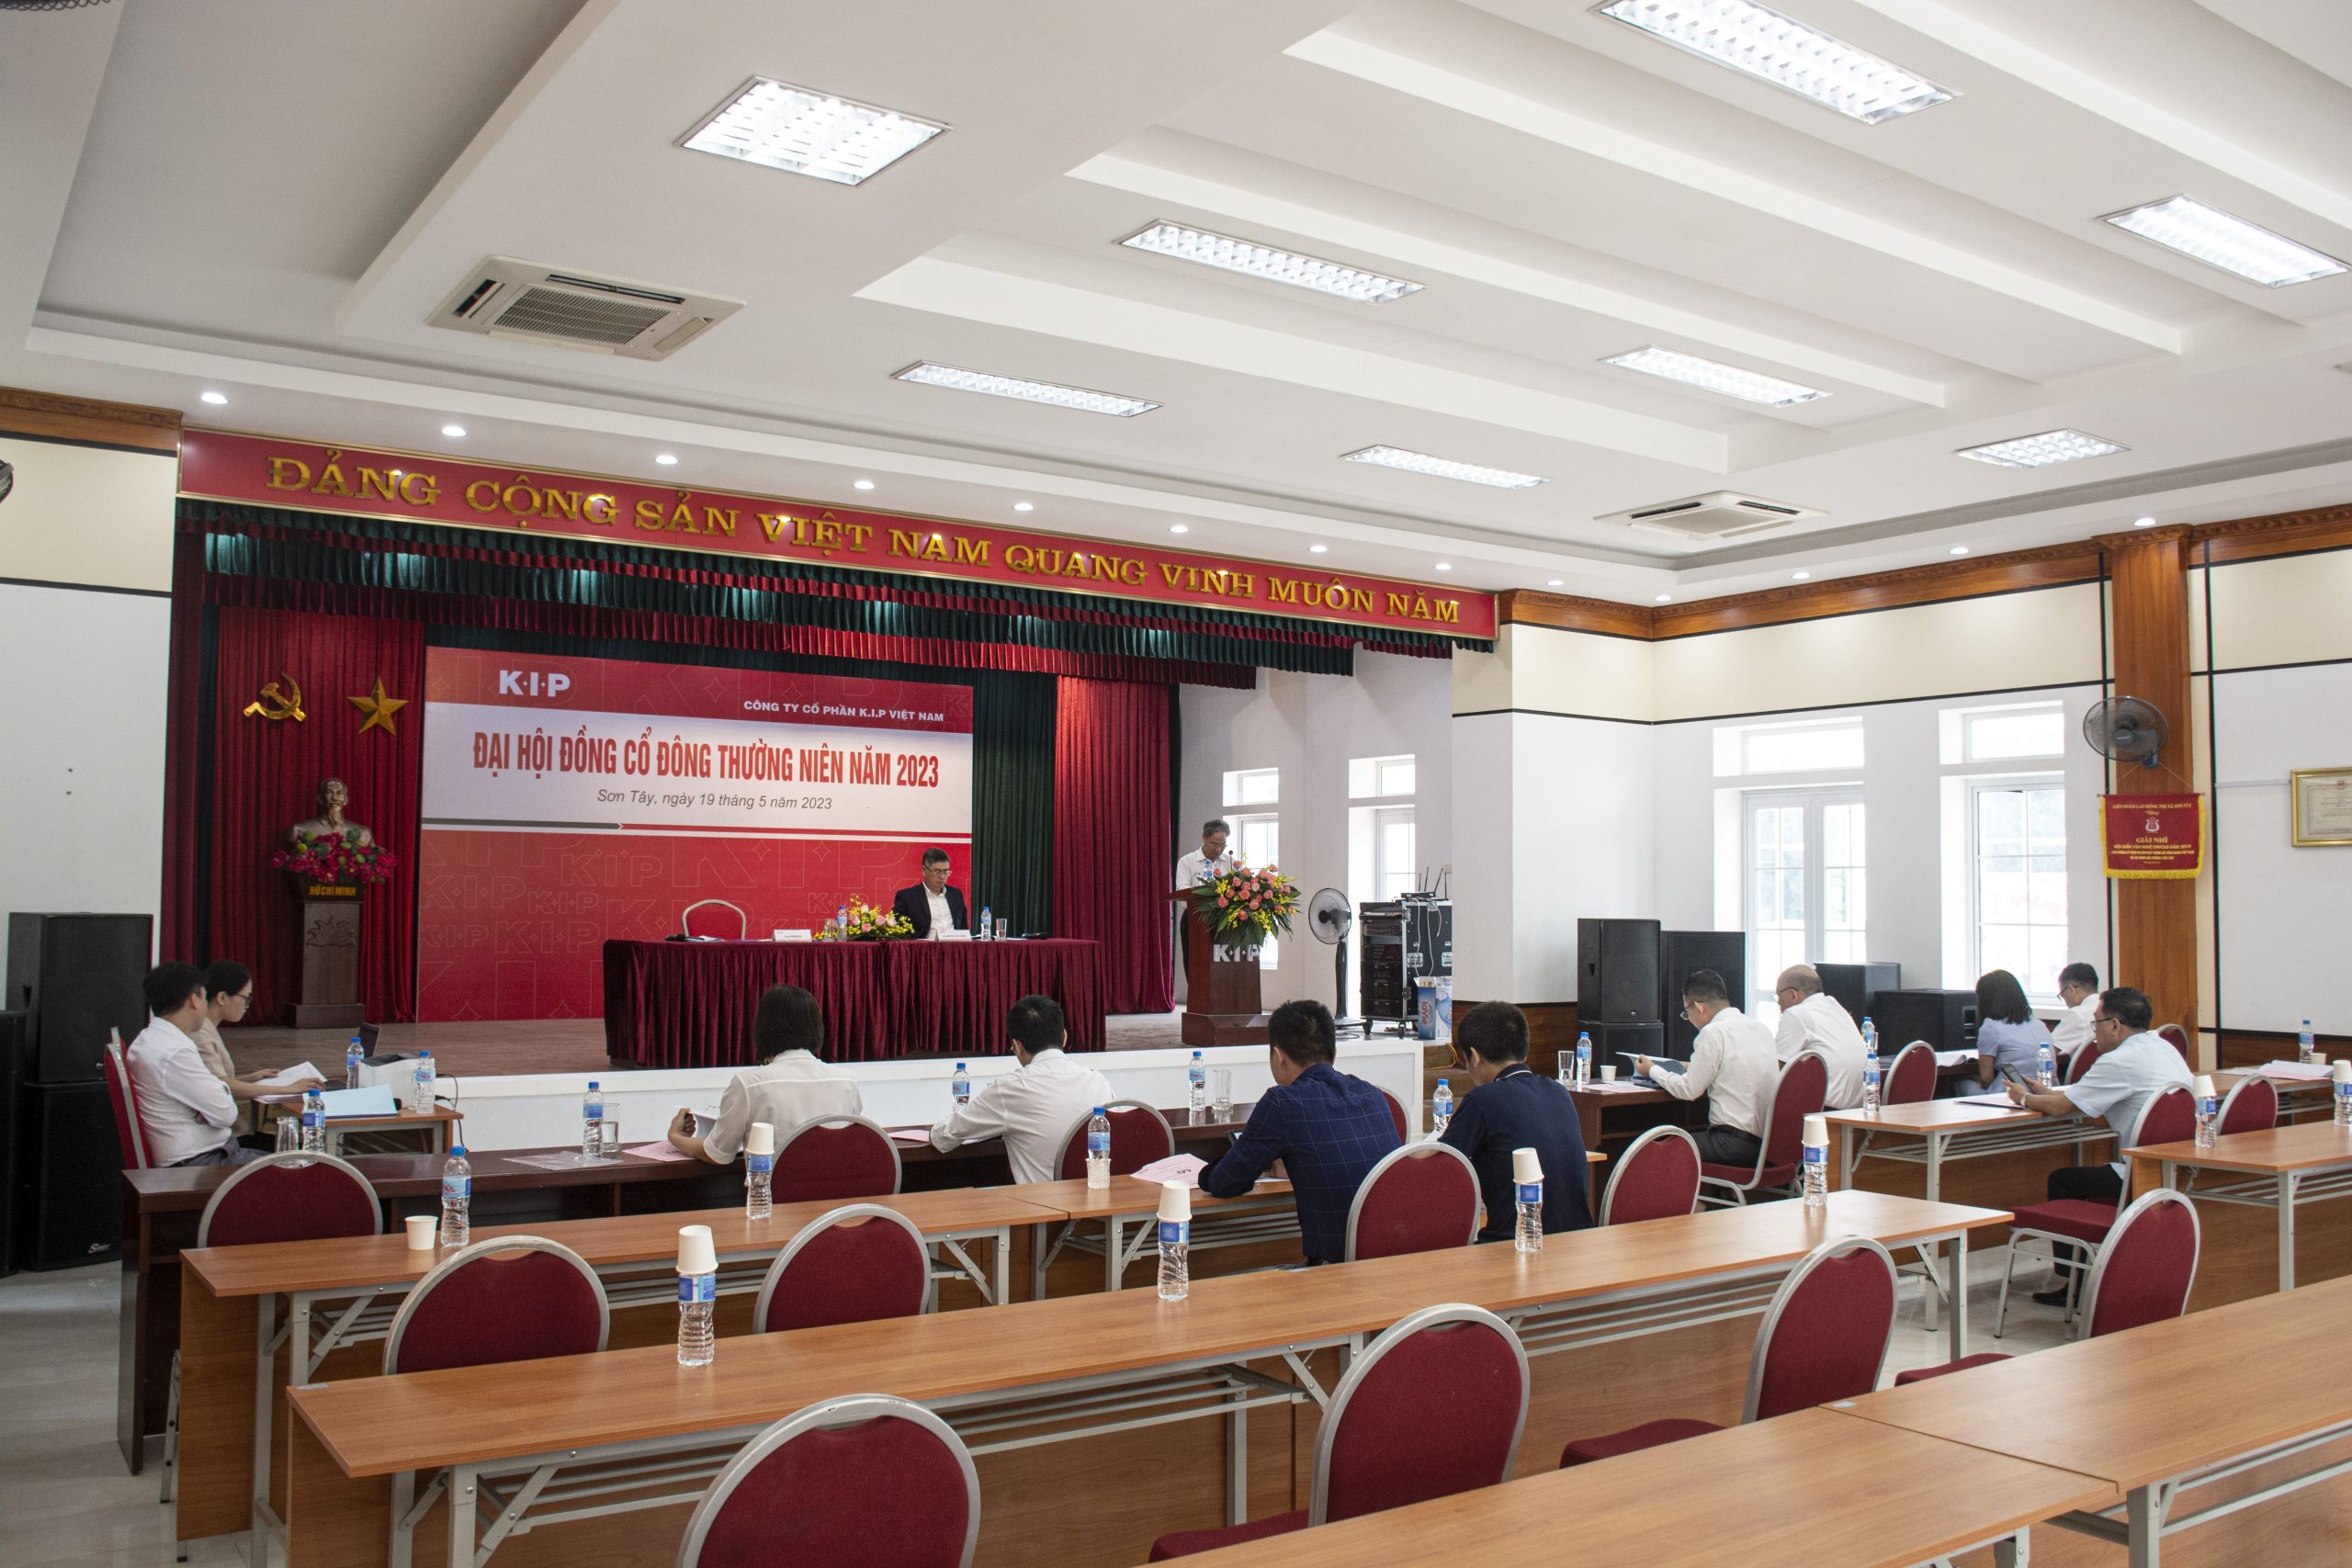 Đại hội đồng cổ đông thường niên năm 2023 tại K.I.P Việt Nam